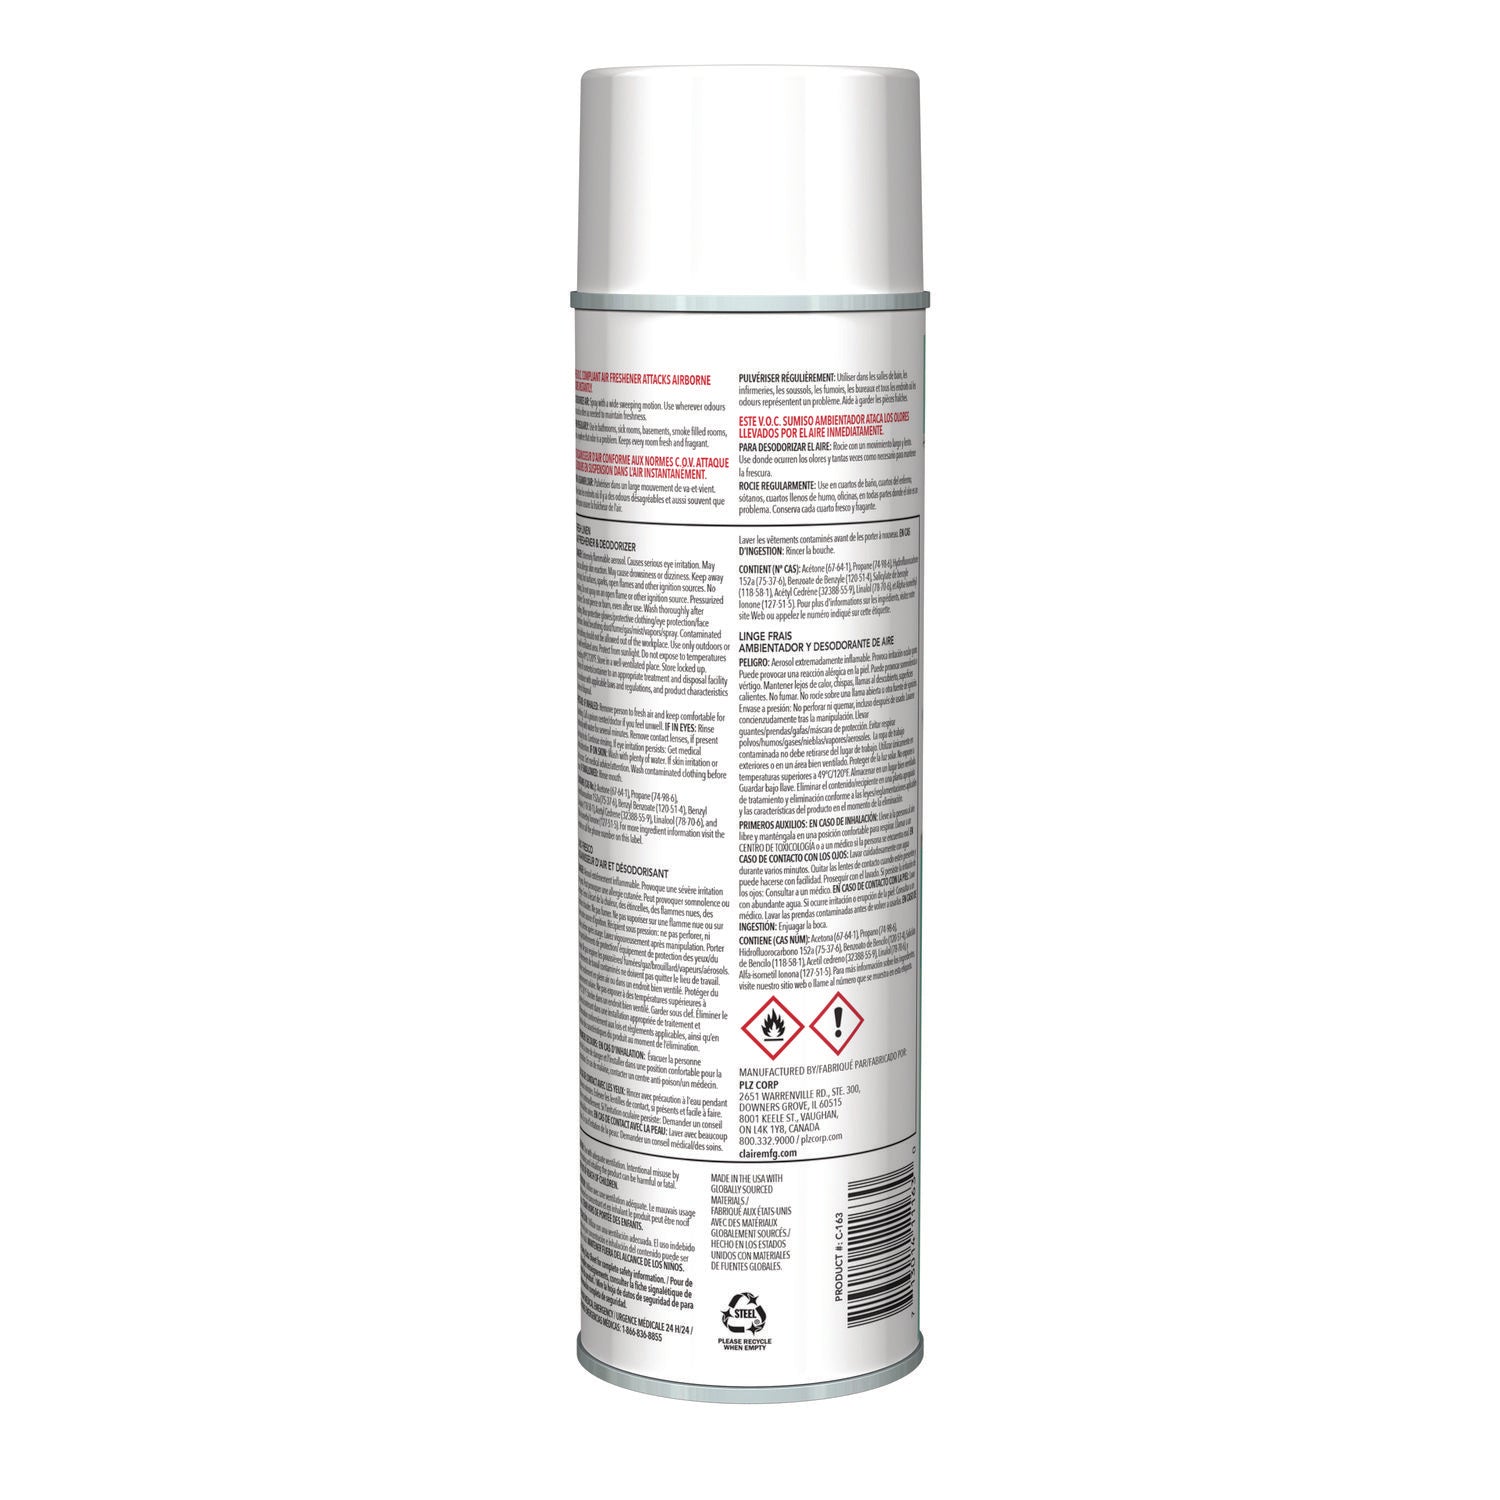 aerosol-air-freshener-and-deodorizer-fresh-linen-10-oz-aerosol-spray-12-cans_cgc163 - 2